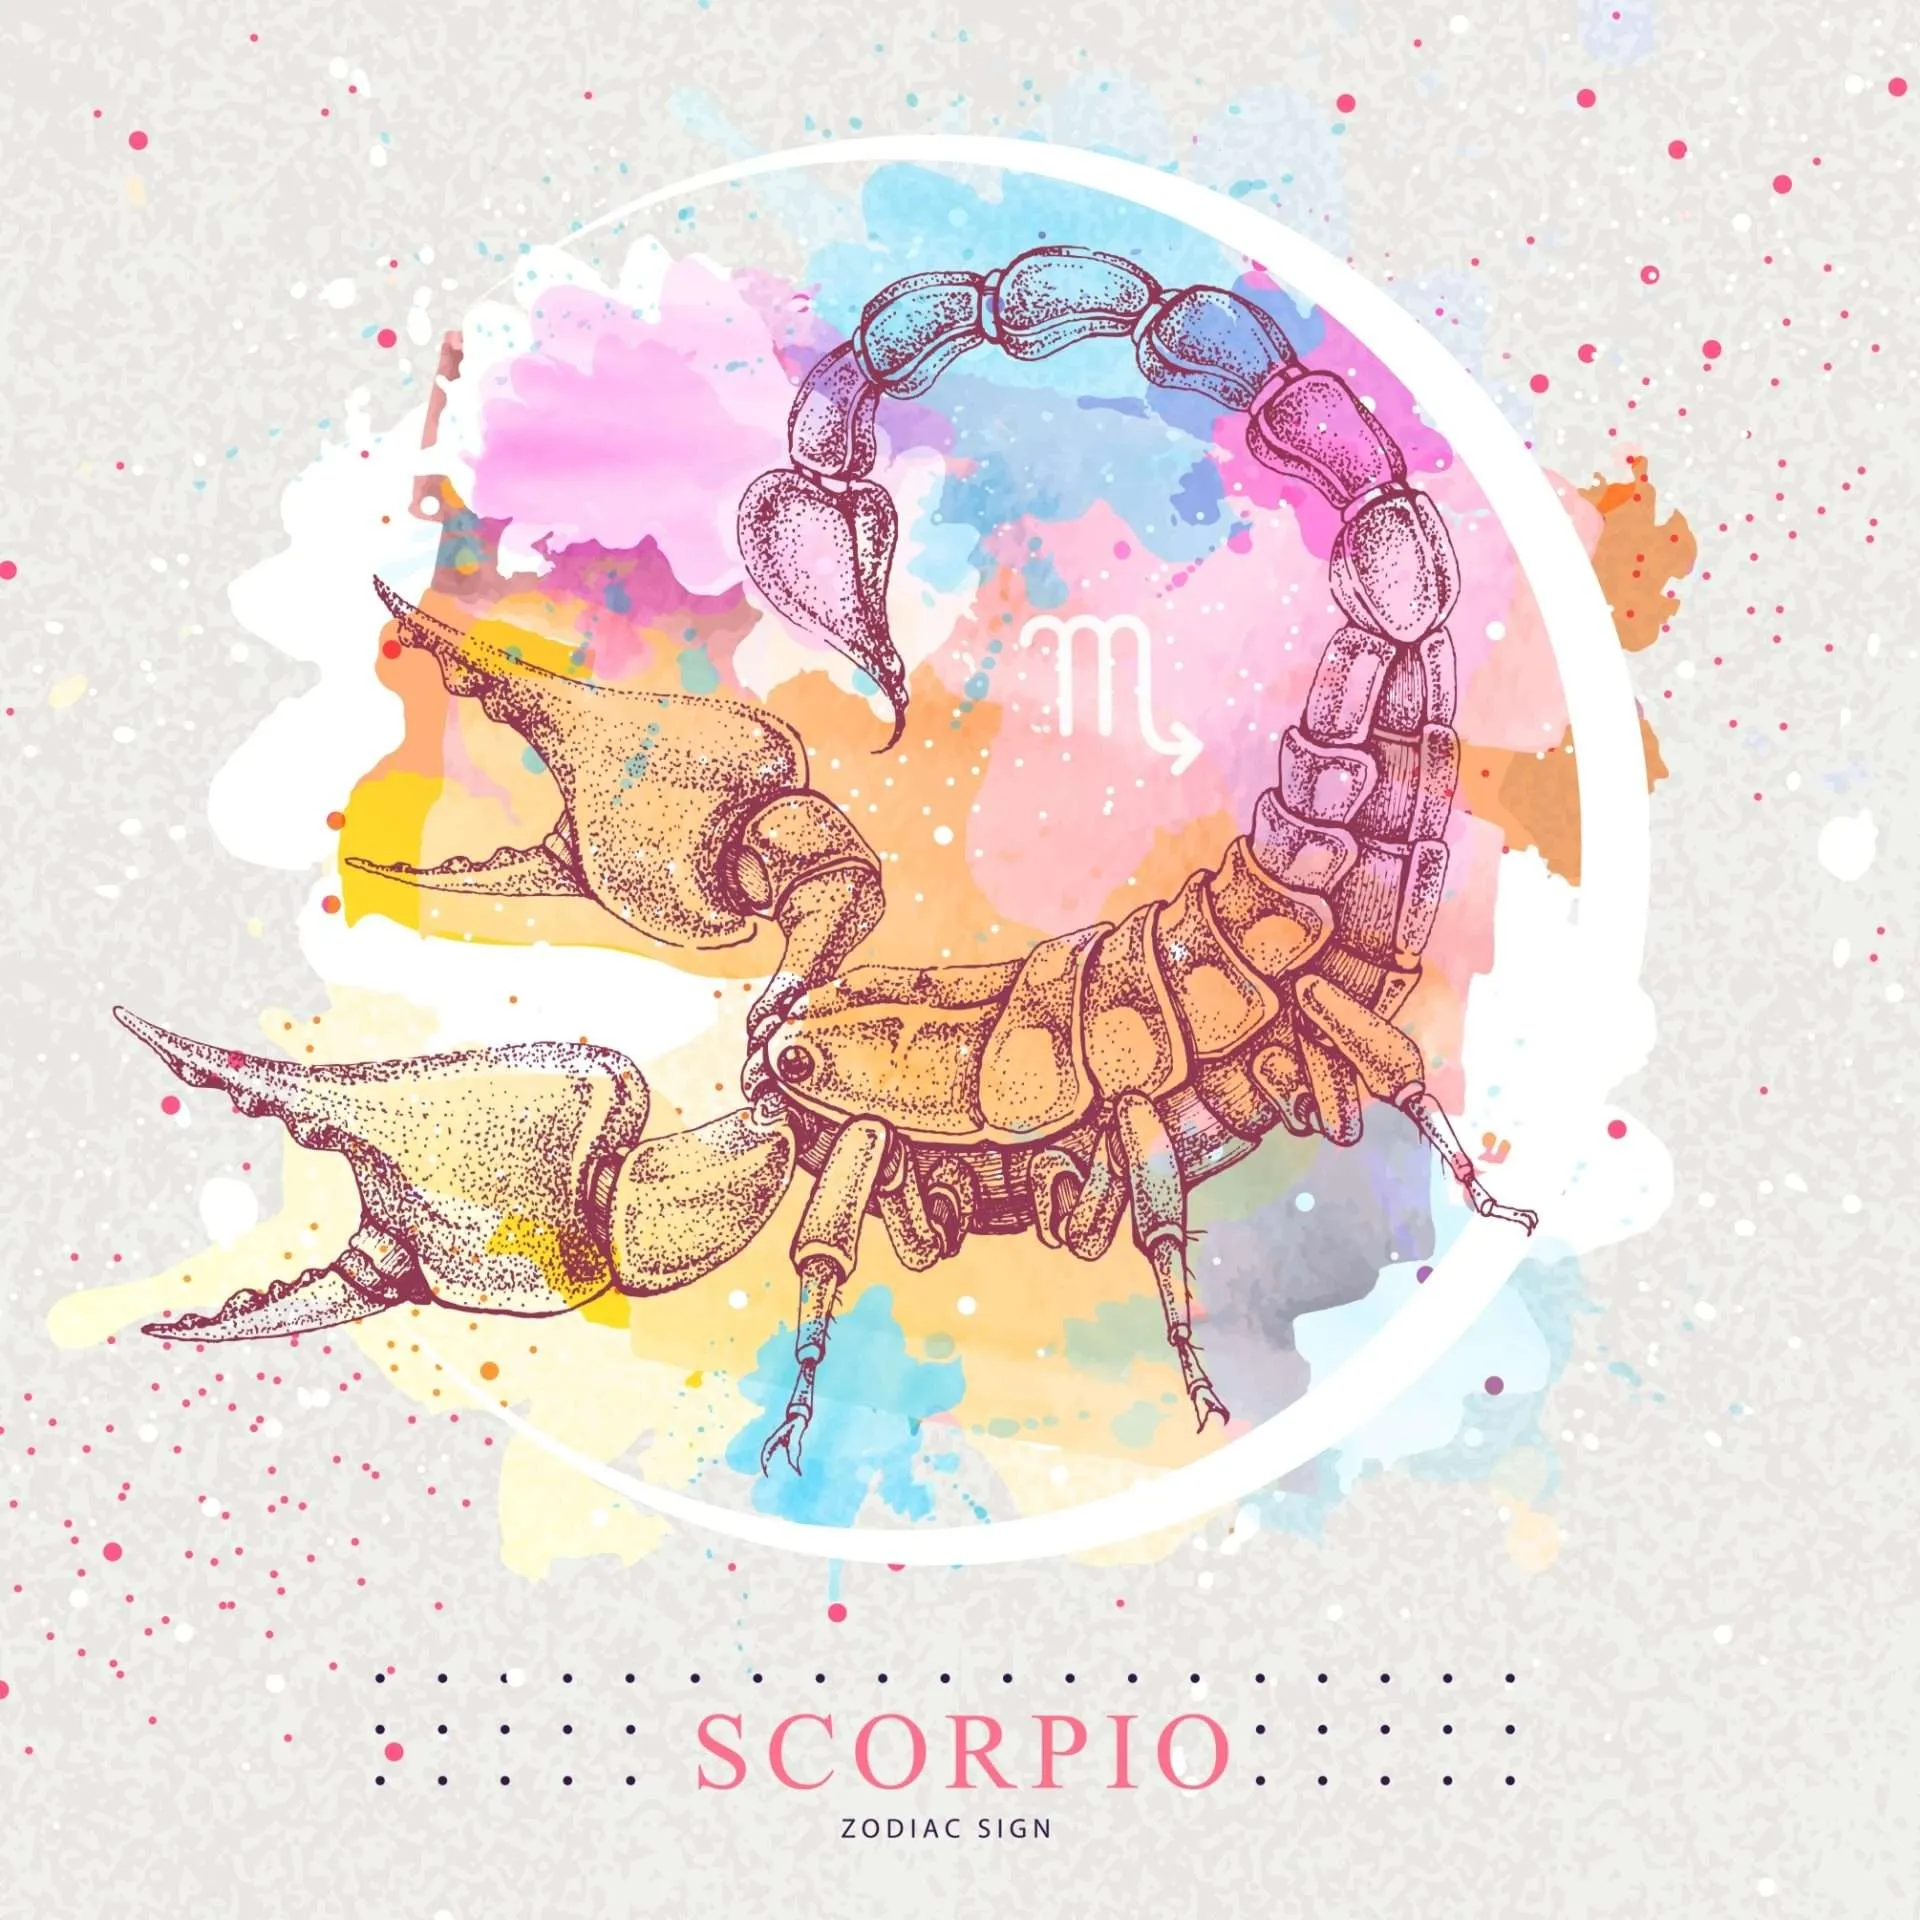 Scorpio Signature Sign